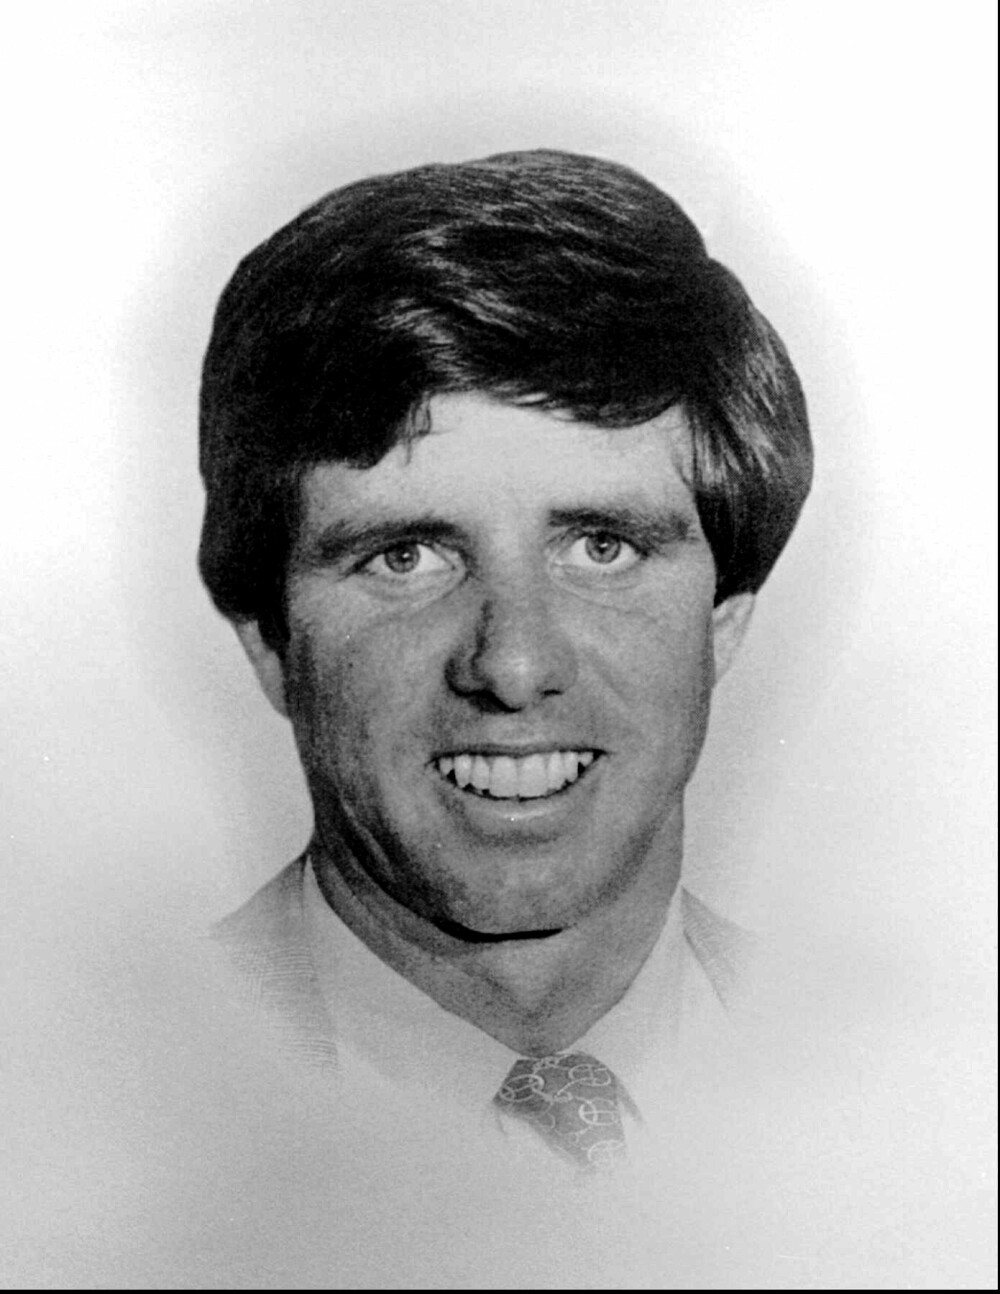 <b>SKIULYKKE:</b> Michael Kennedy var sønn av Robert F. og Ethel Kennedy. I 1997 døde han i en skiulykke i Aspen, Colorado.